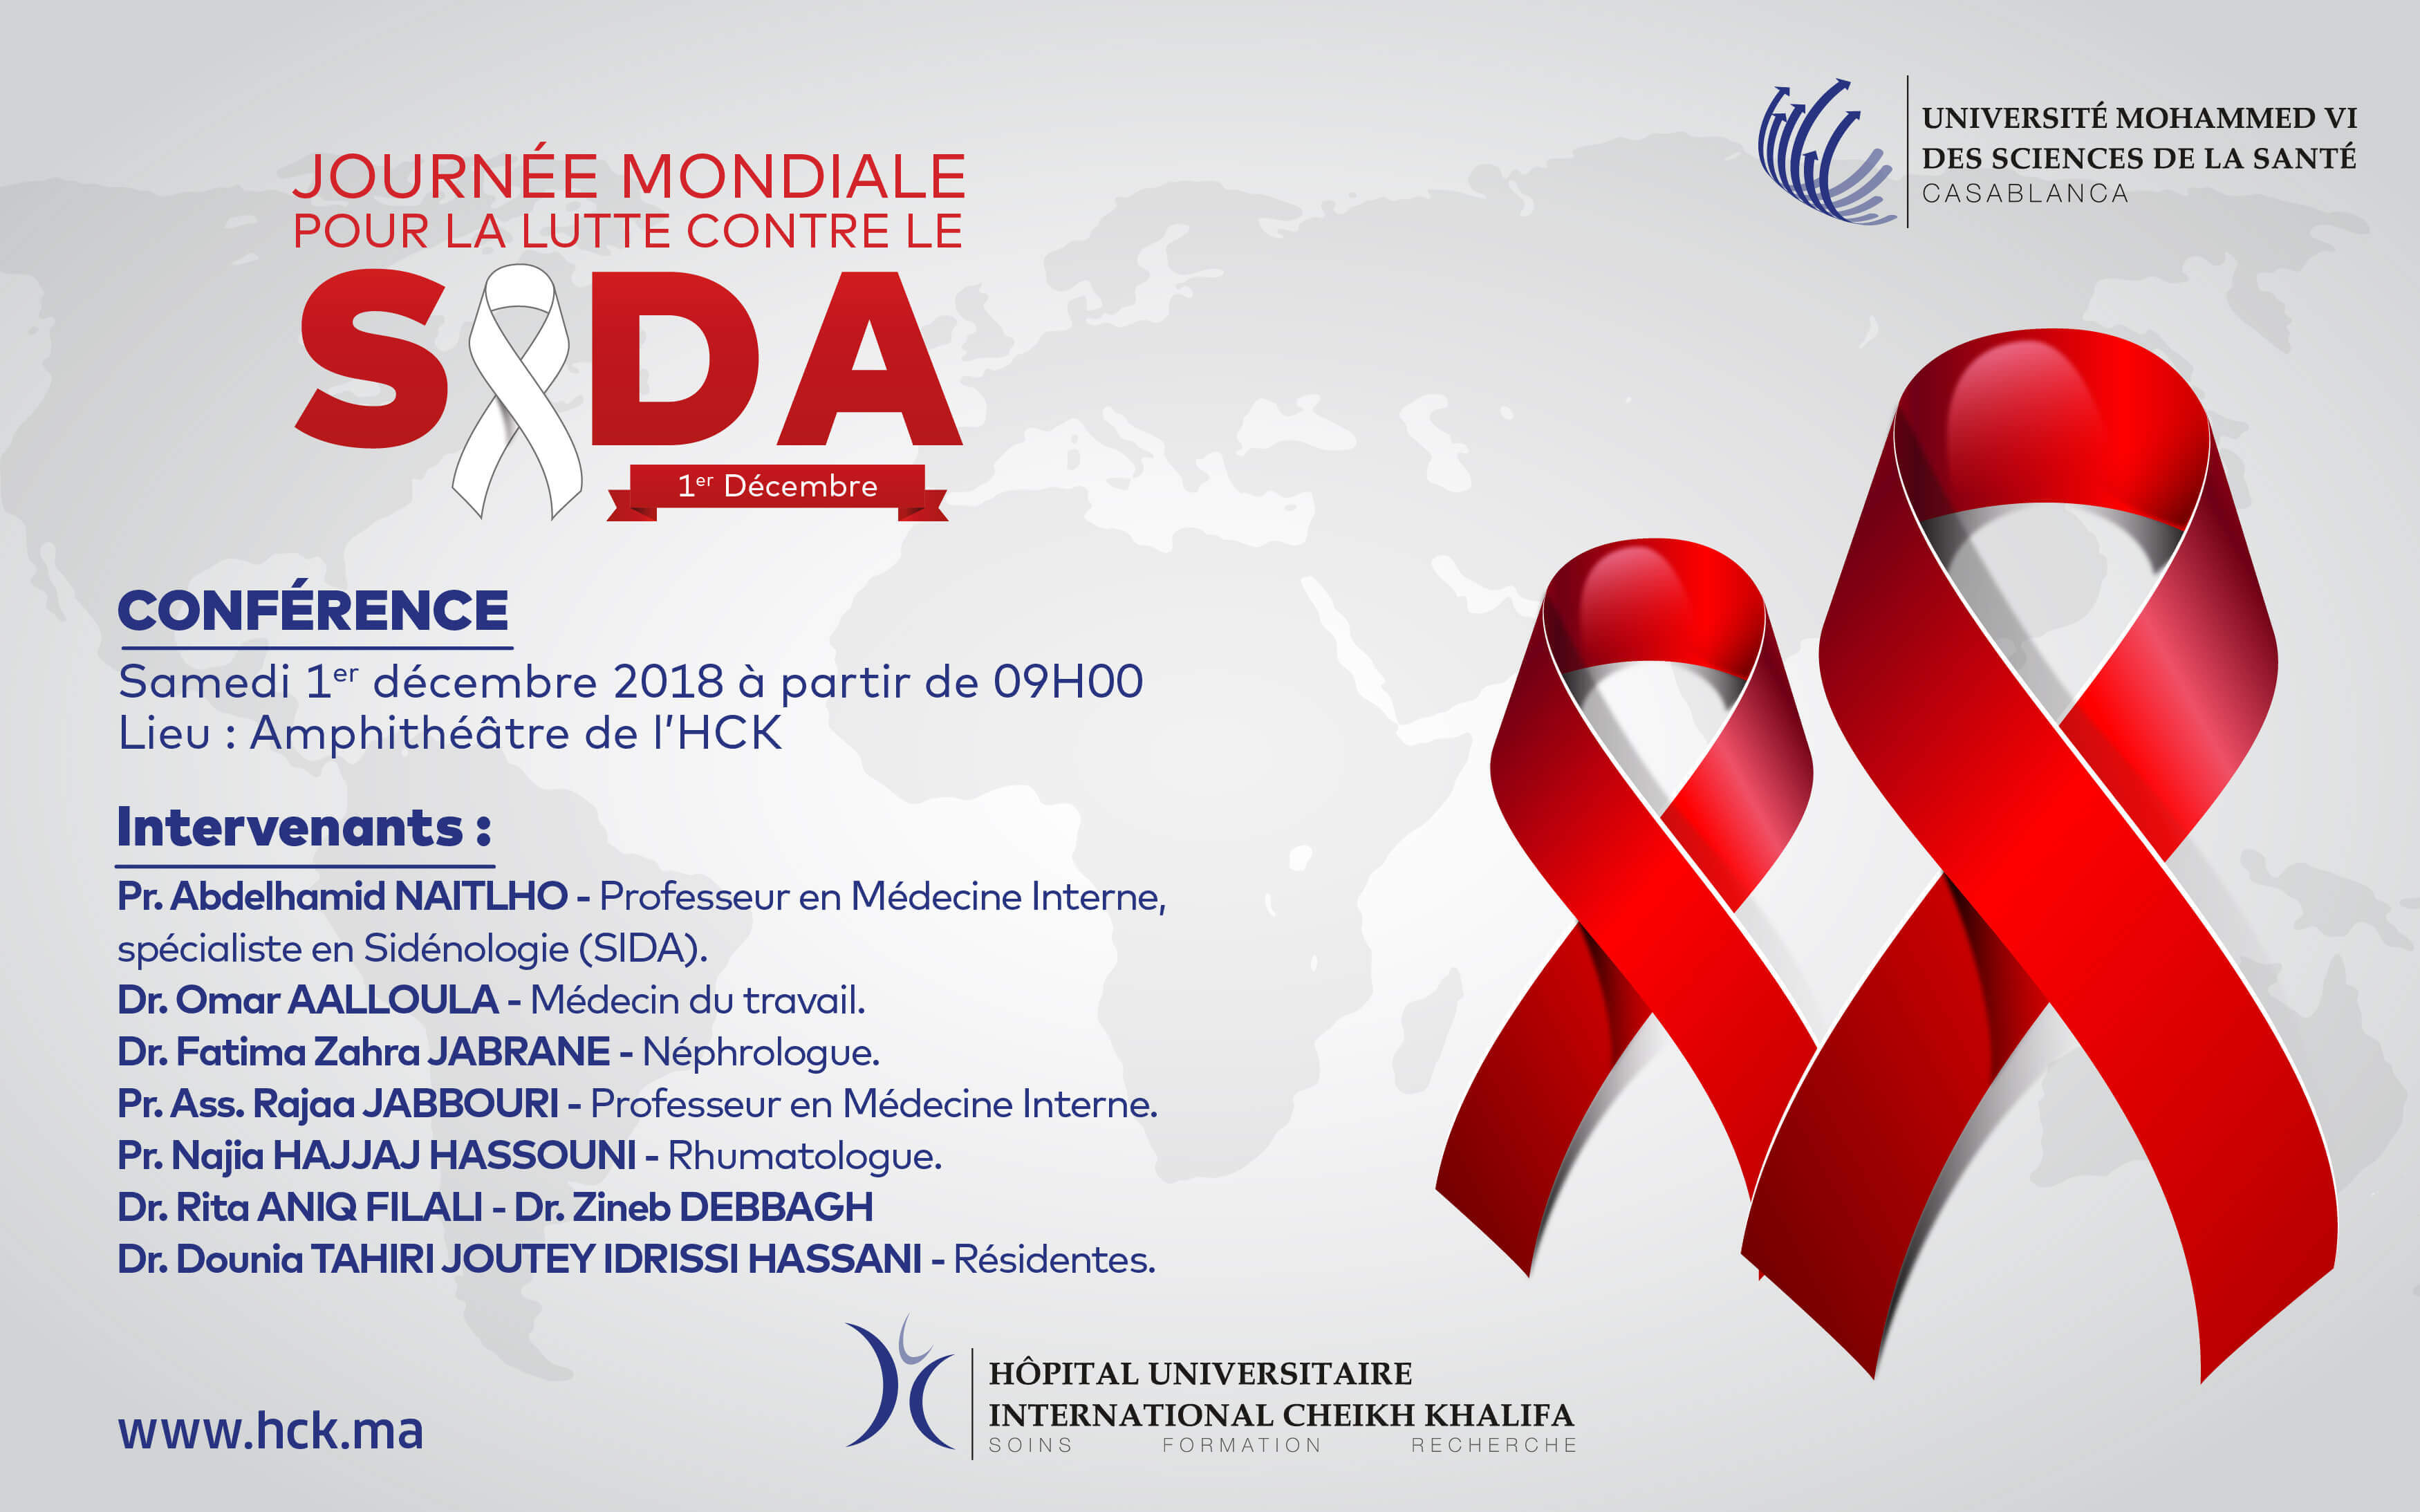 CONFÉRENCE : JOURNÉE MONDIALE POUR LA LUTTE CONTRE LE SIDA